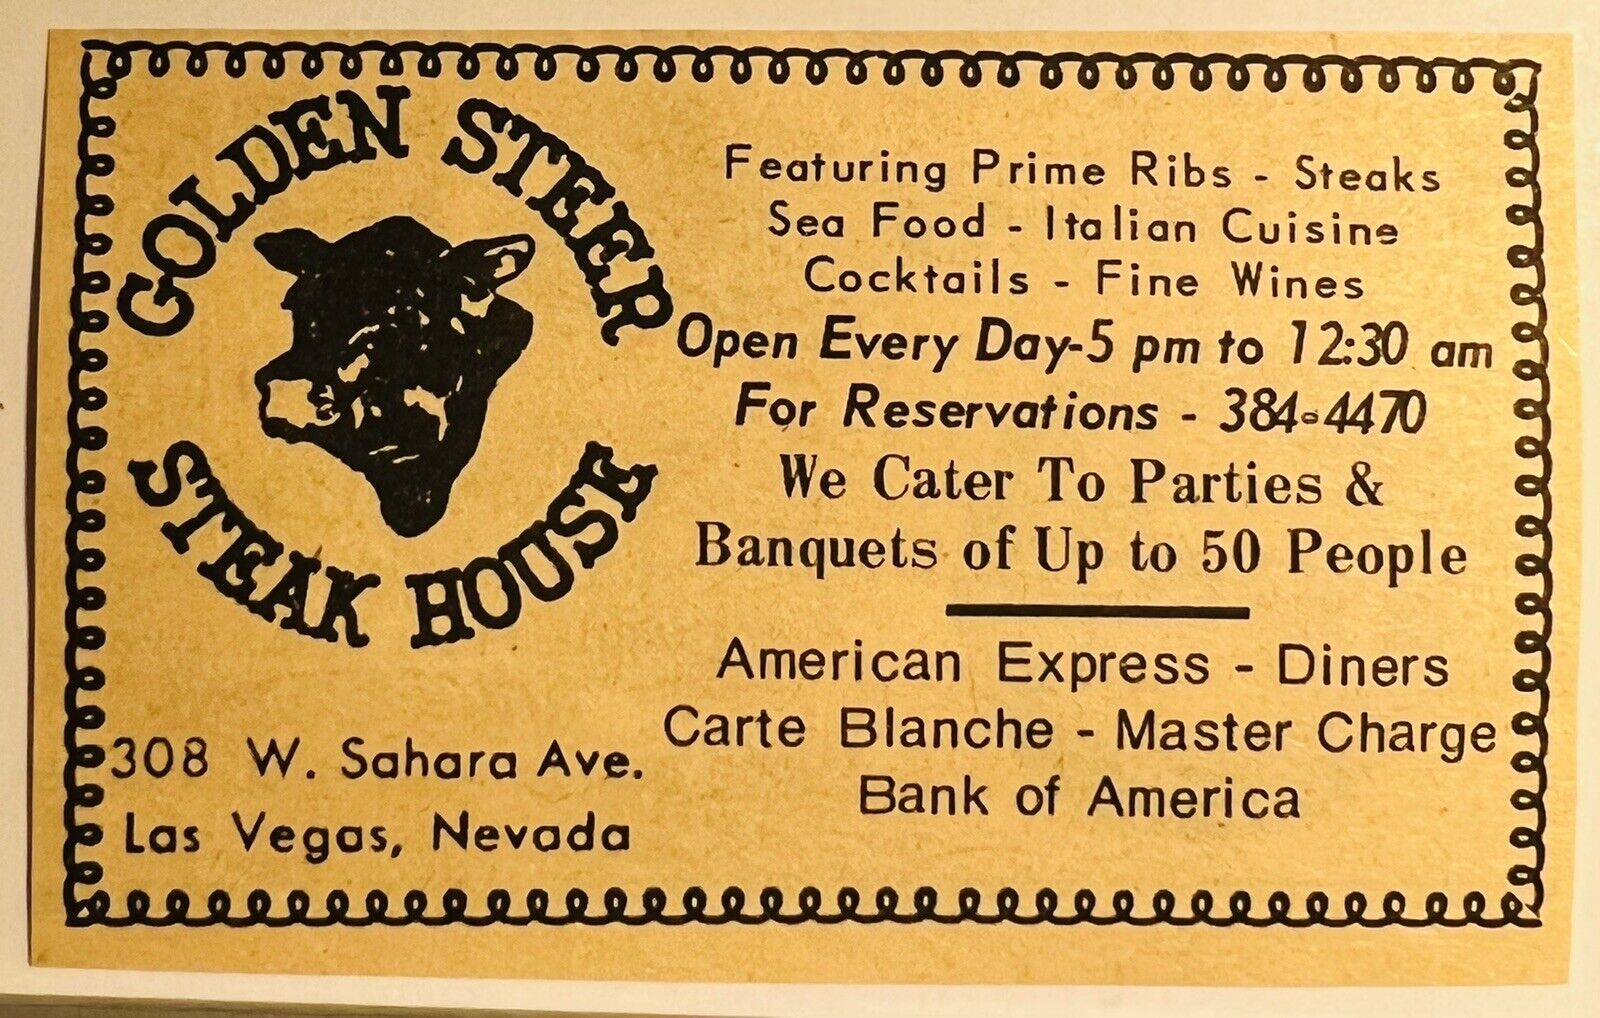 Las Vegas Nevada 1969 Advertising Clipping Golden Steer Steakhouse Sahara Ave